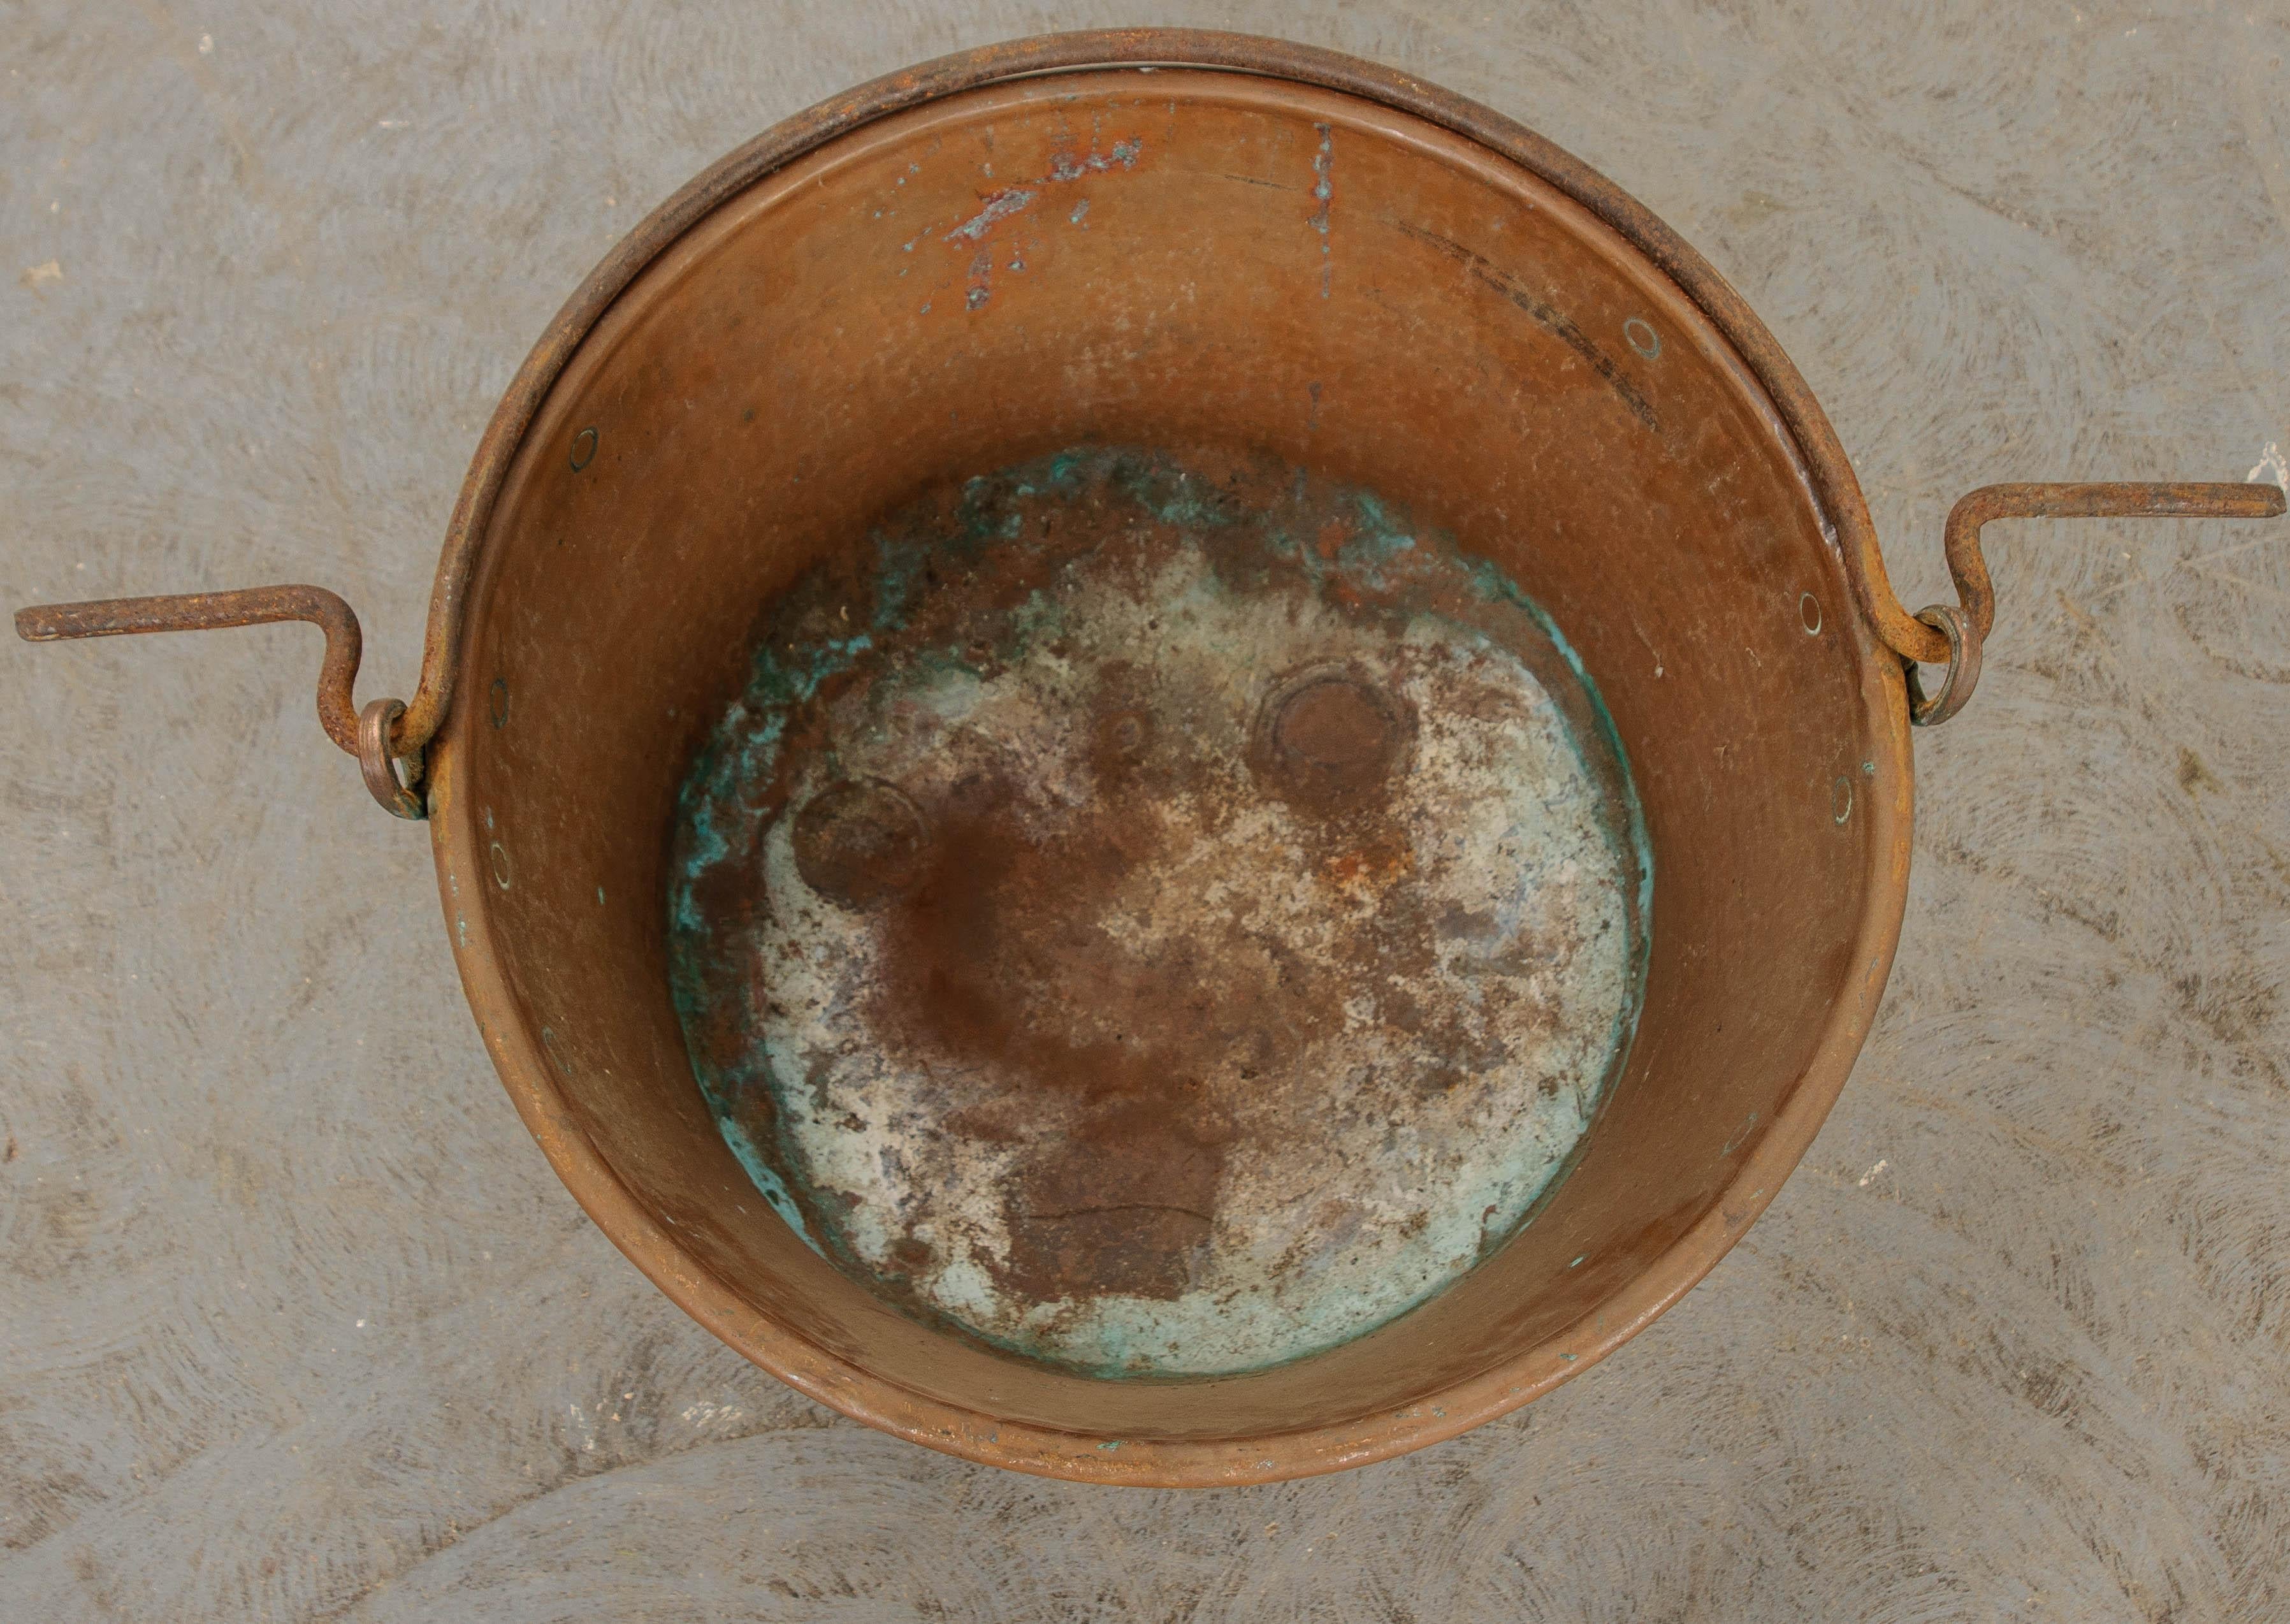 Un grand pot en cuivre ancien, équipé d'une poignée en fer forgé qui peut être utilisée pour suspendre le récipient au-dessus d'un feu. Le pot a un extérieur martelé qui donne à l'antiquité une finition stylisée. Le cuivre s'est merveilleusement